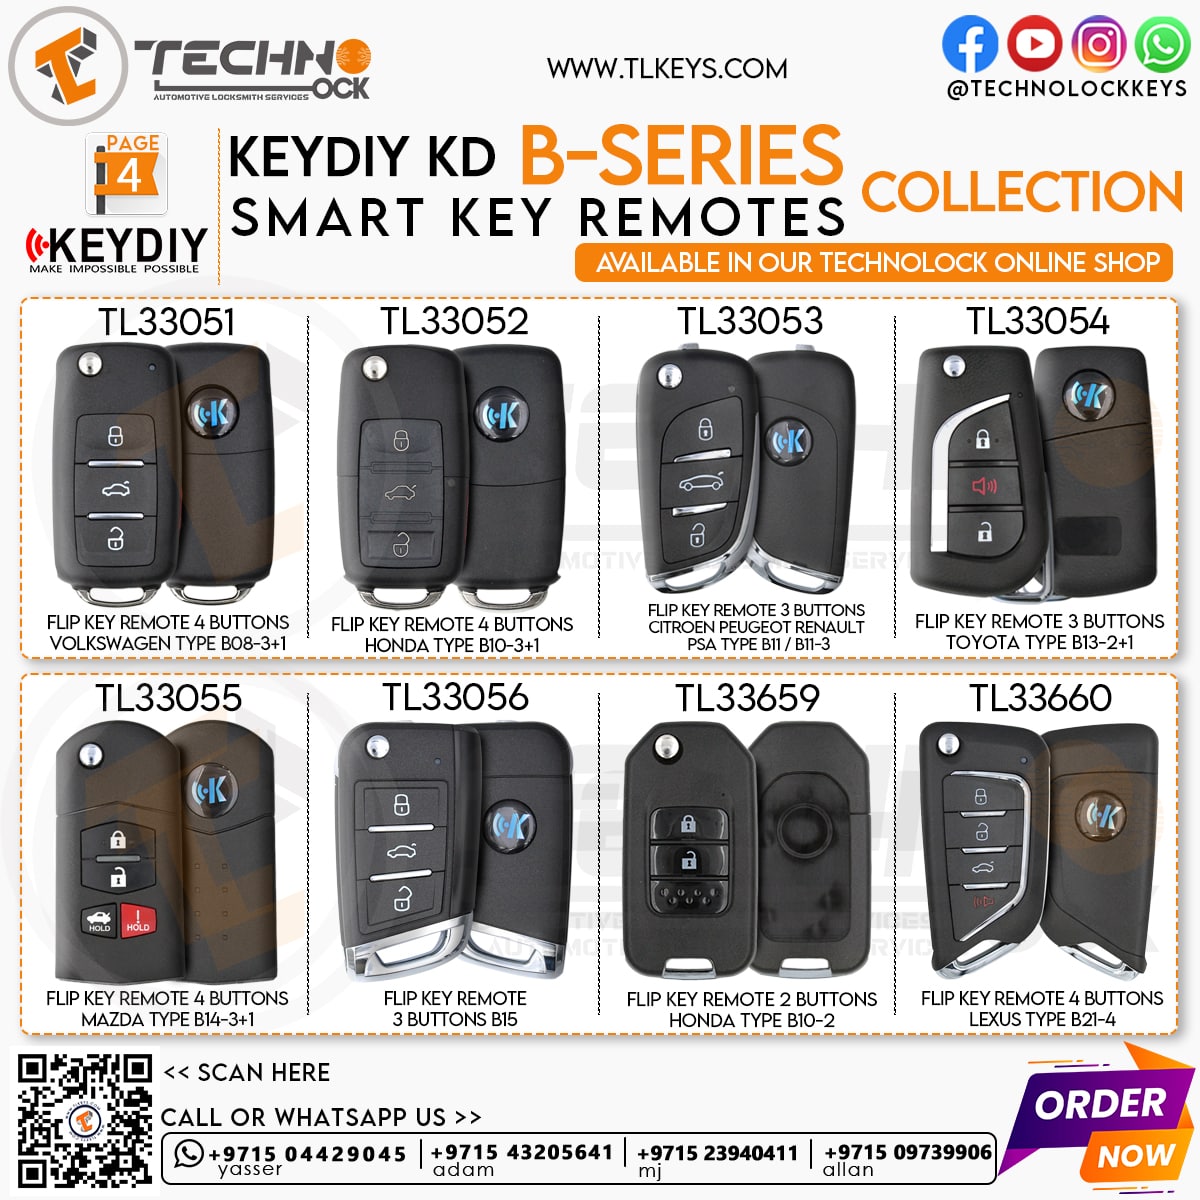  KEYDIY Car Flip Key Remote Style B-Series for KD-X2 